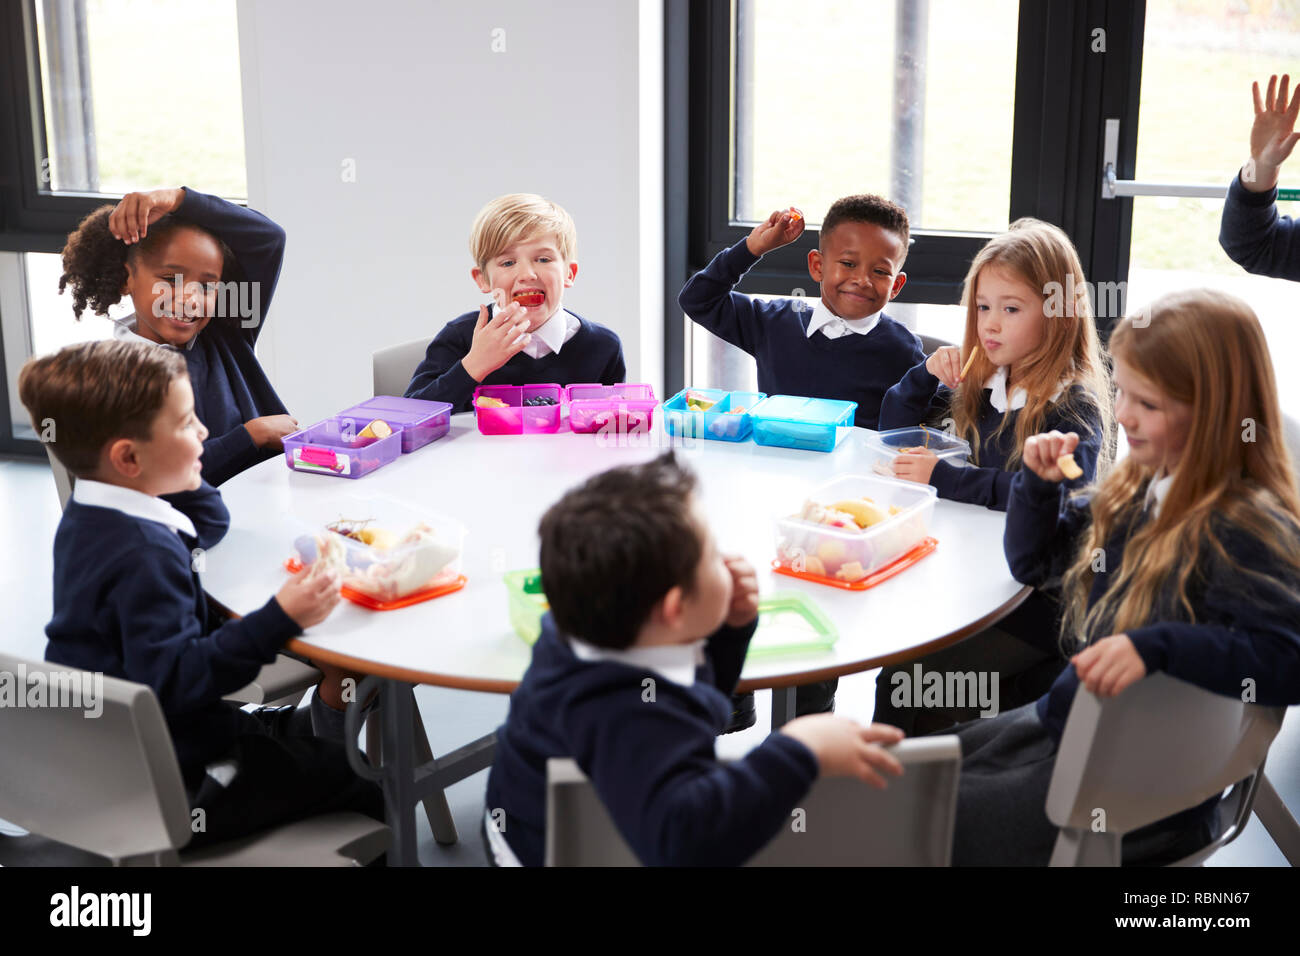 Ansicht der Grundschule Kinder sitzen gemeinsam an einem runden Tisch essen ihre Lunchpakete Stockfoto